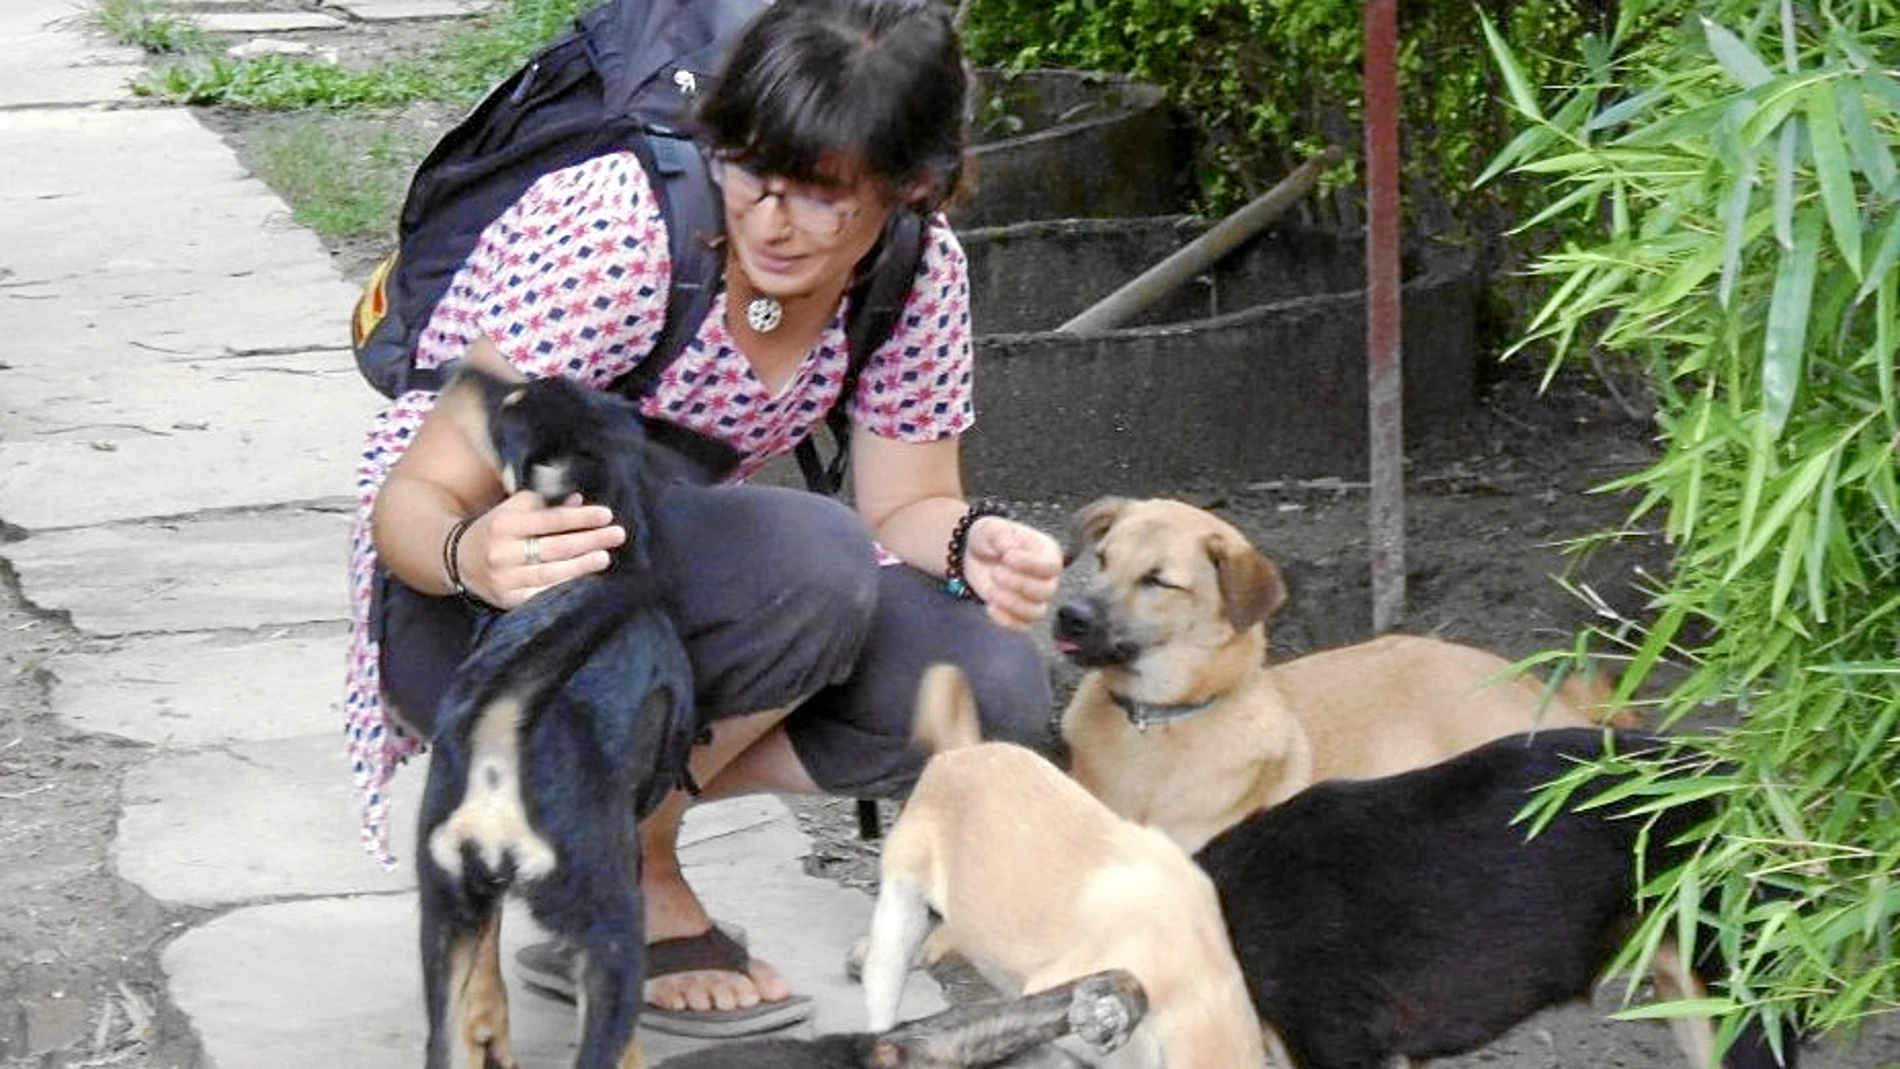 Marta Pedraja, veterinaria de 25 años, ha participado en varios proyectos solidarios con animales en Nepal, Tailandia o Polinesia